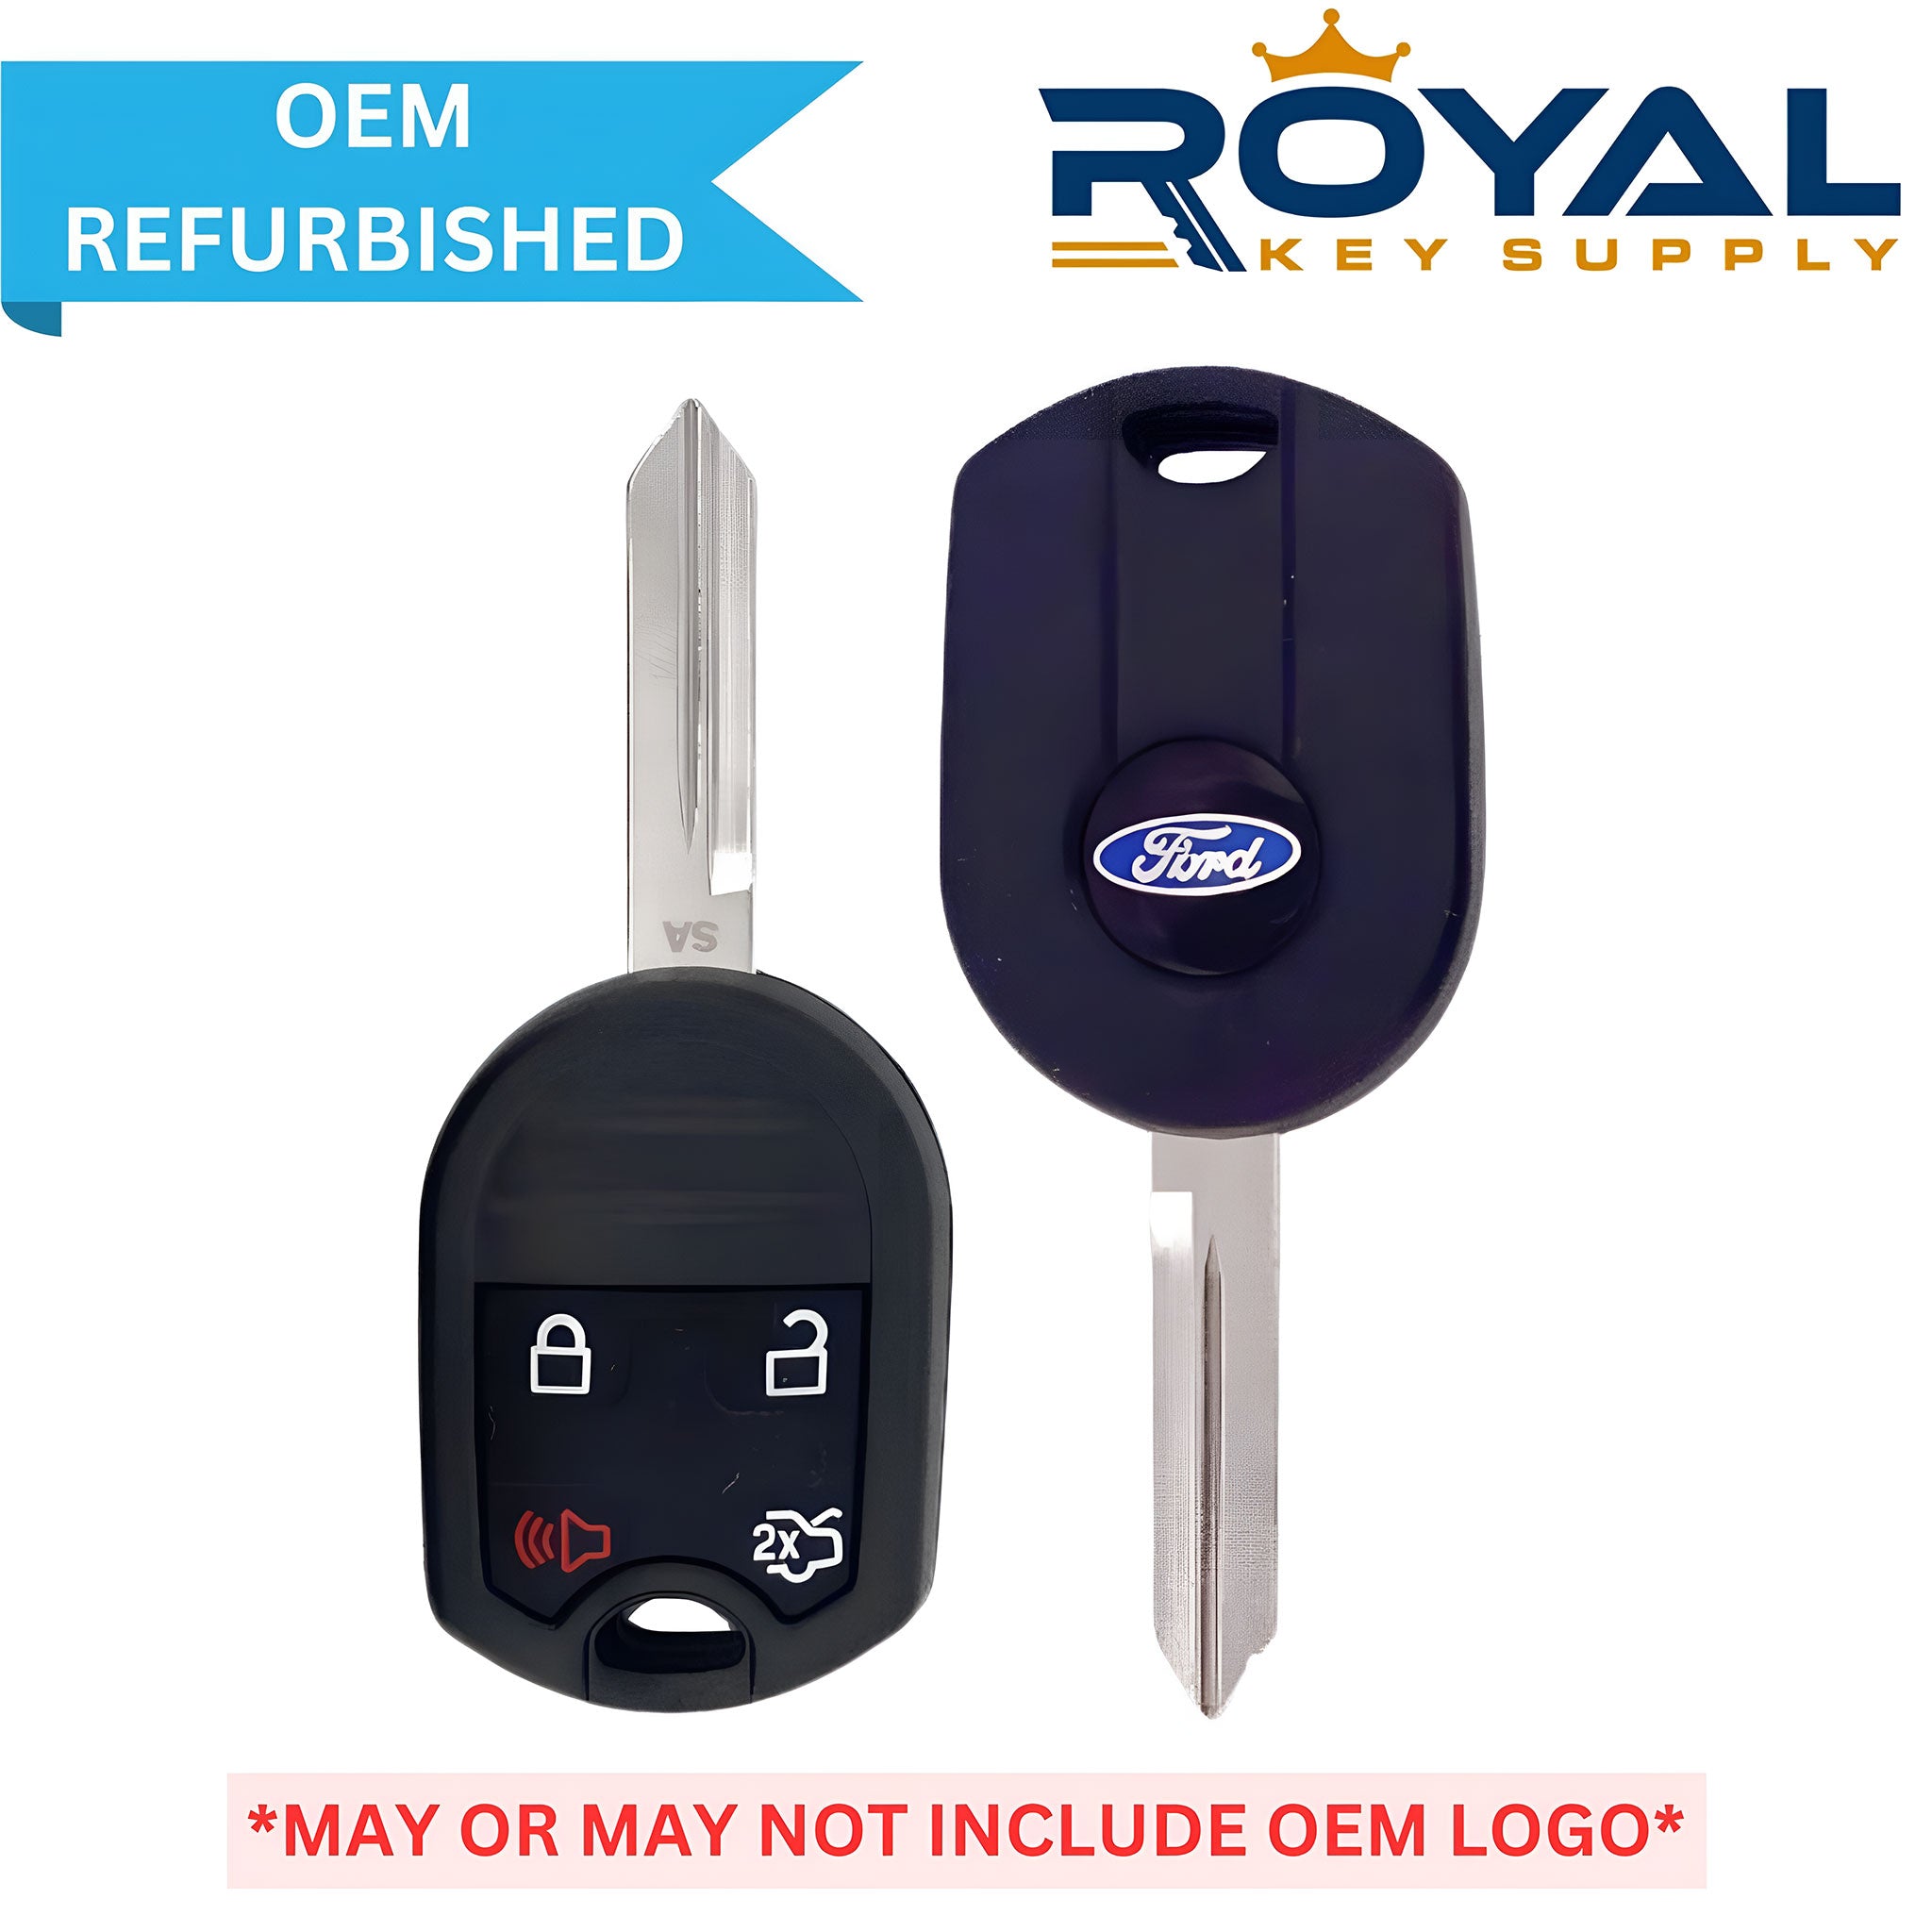 Ford Refurbished 2011-2019 Escape, Edge, Mustang, Flex, Focus Remote Head Key 4B Trunk FCCID: CWTWB1U793 80 Bit PN# 5912512, 164-R8073 - Royal Key Supply